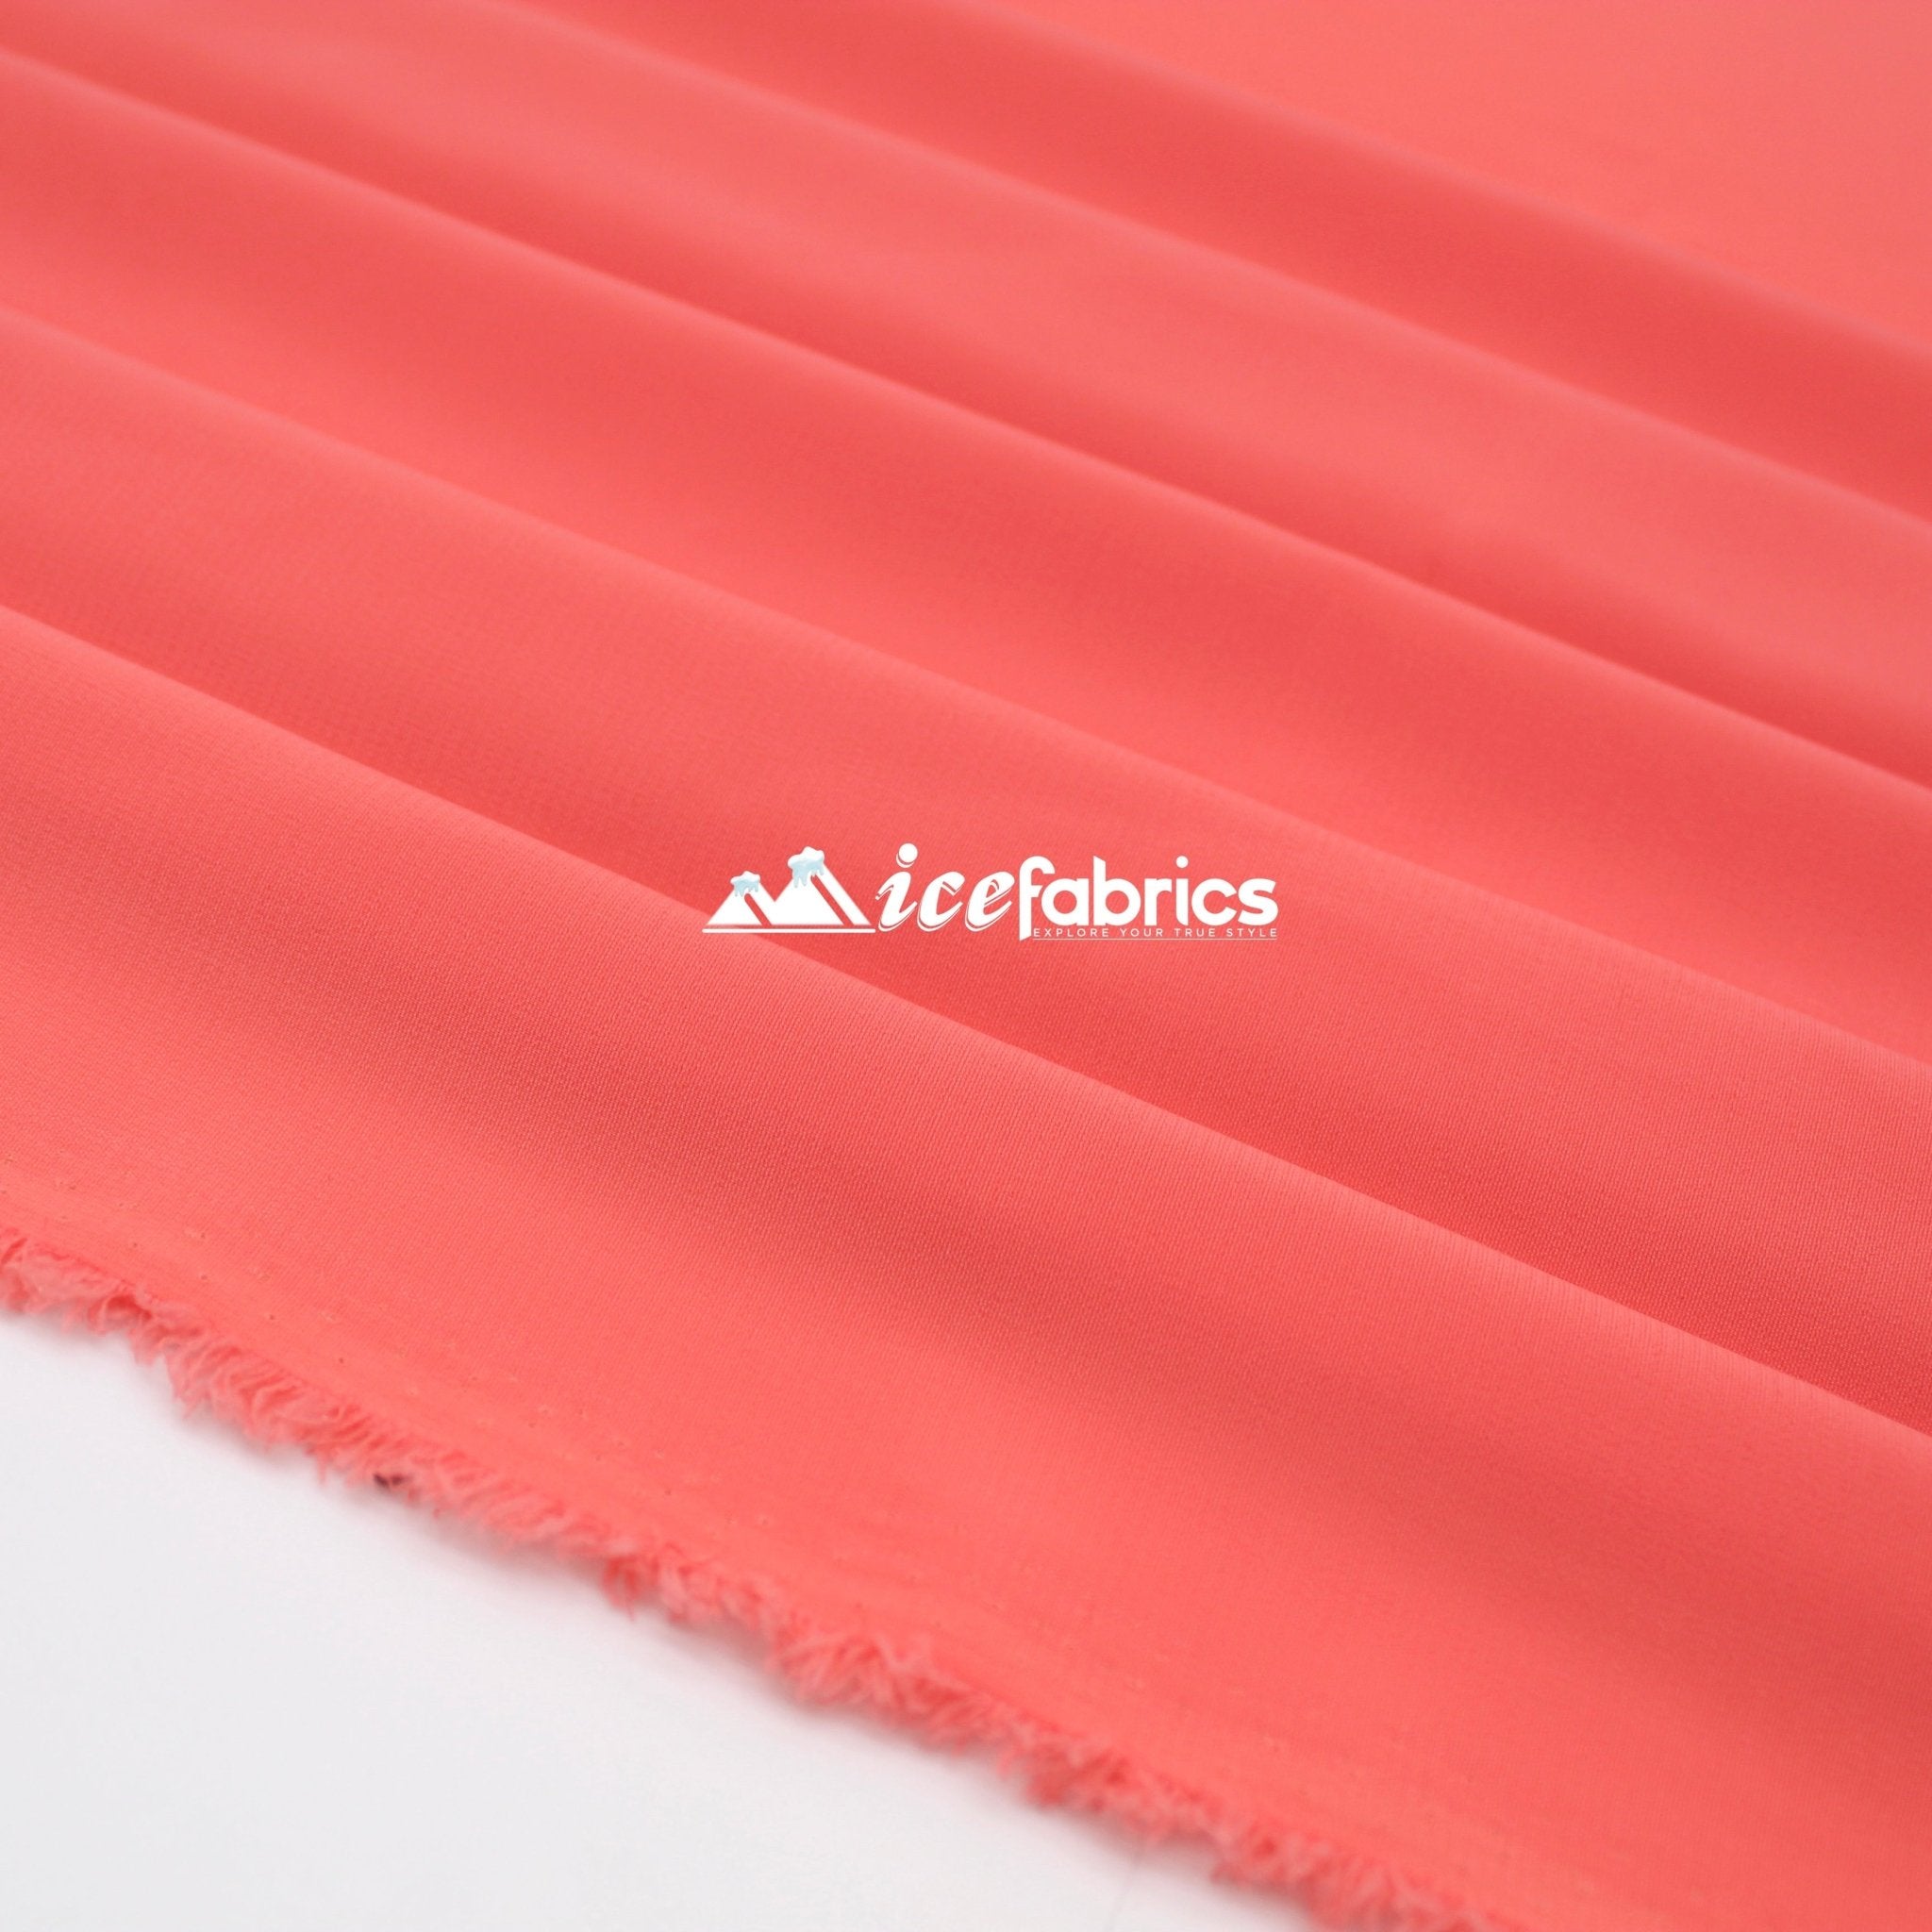 Silk Fabric Stretch Chiffon Fabric/ Spandex Fabric/ CoralChiffon FabricICE FABRICSICE FABRICSCoralPer YardSilk Fabric Stretch Chiffon Fabric/ Spandex Fabric/ Coral ICE FABRICS